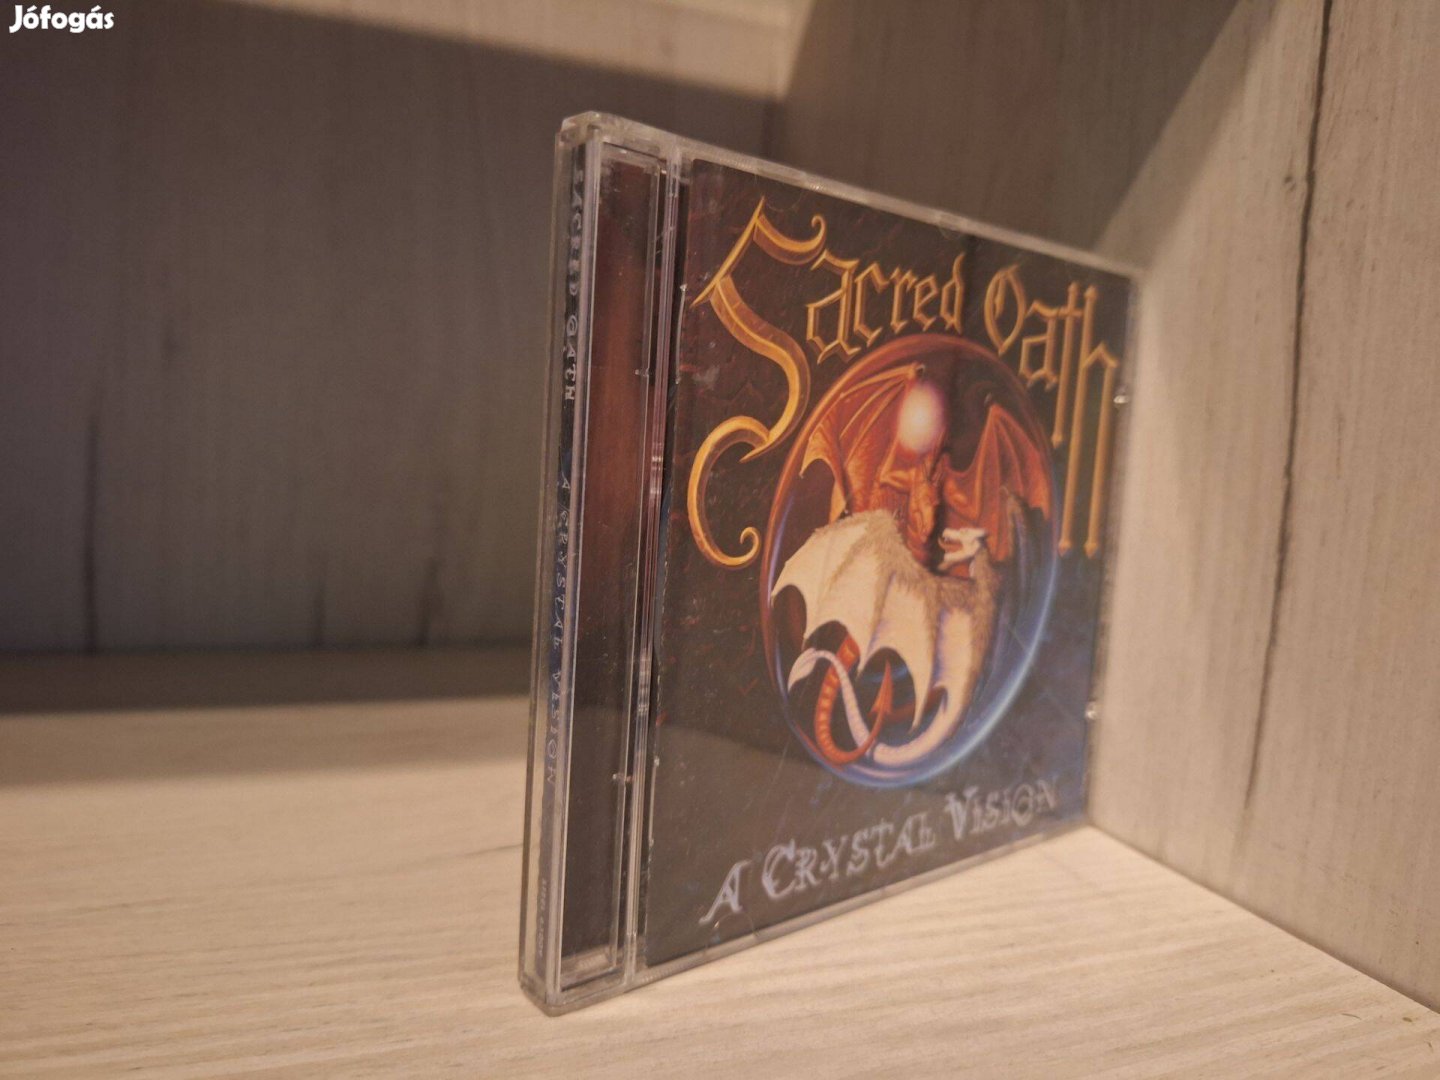 Sacred Oath - A Crystal Vision CD